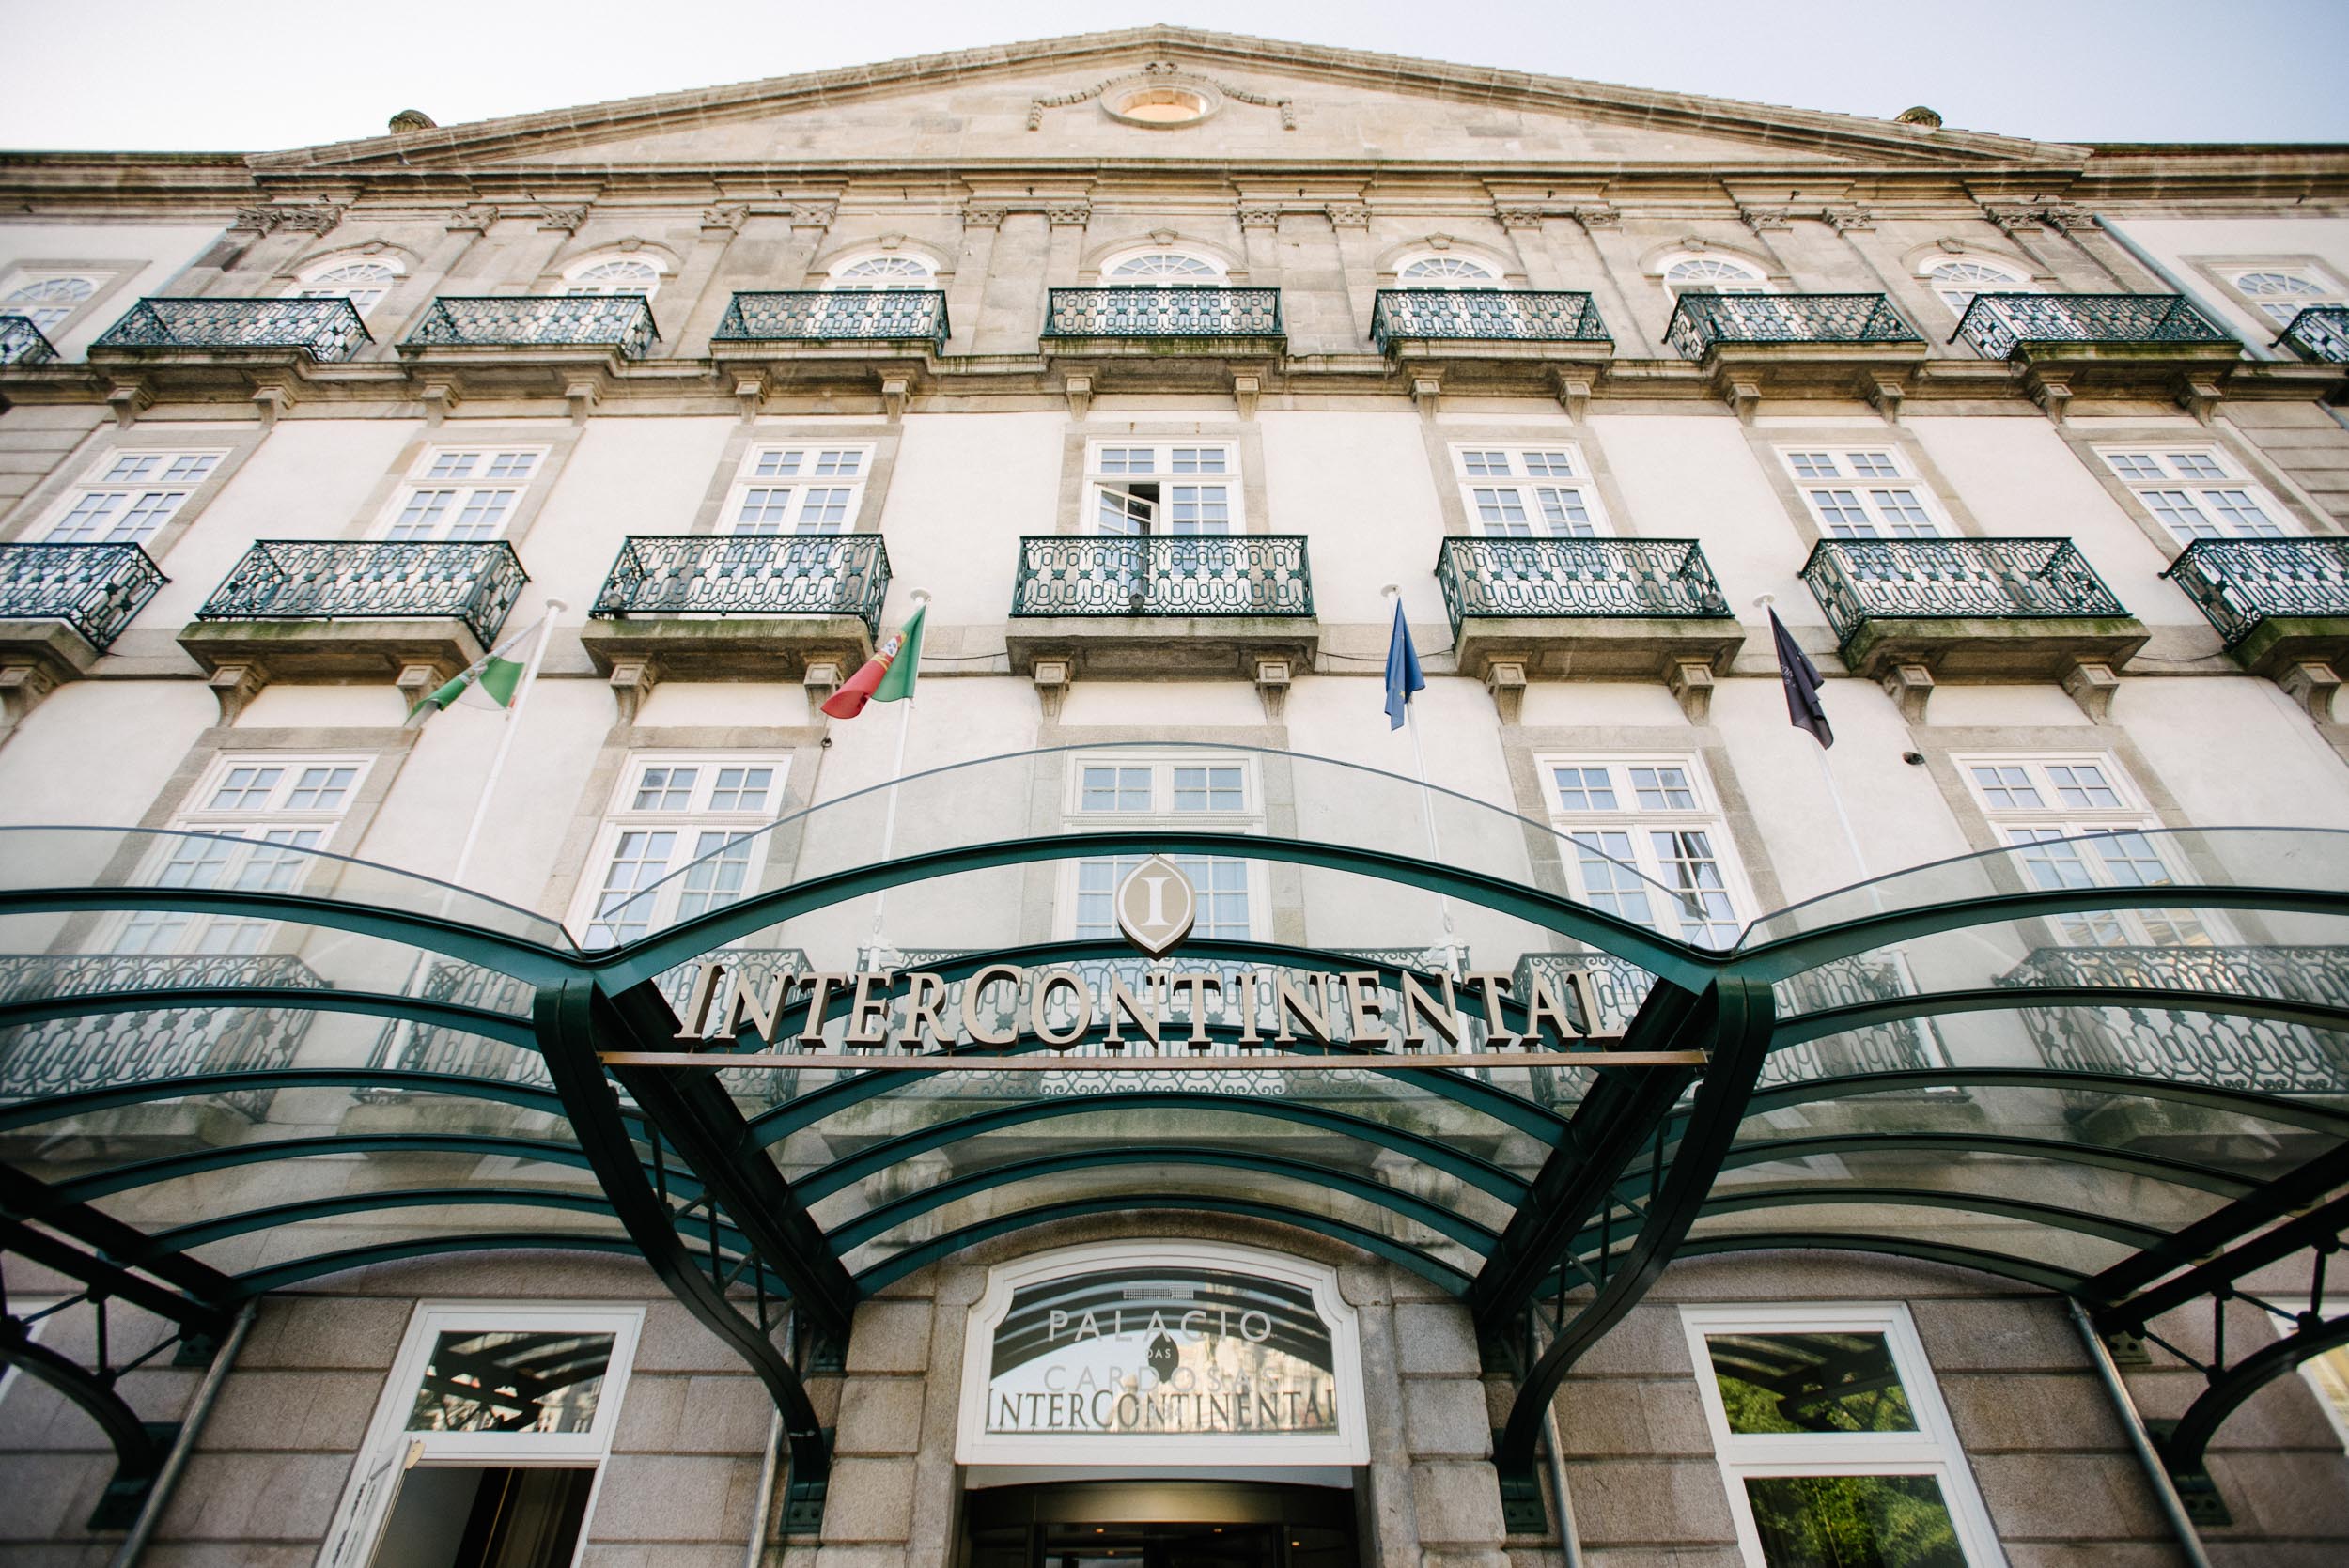 Intercontinental Hotel, Porto, Portugal